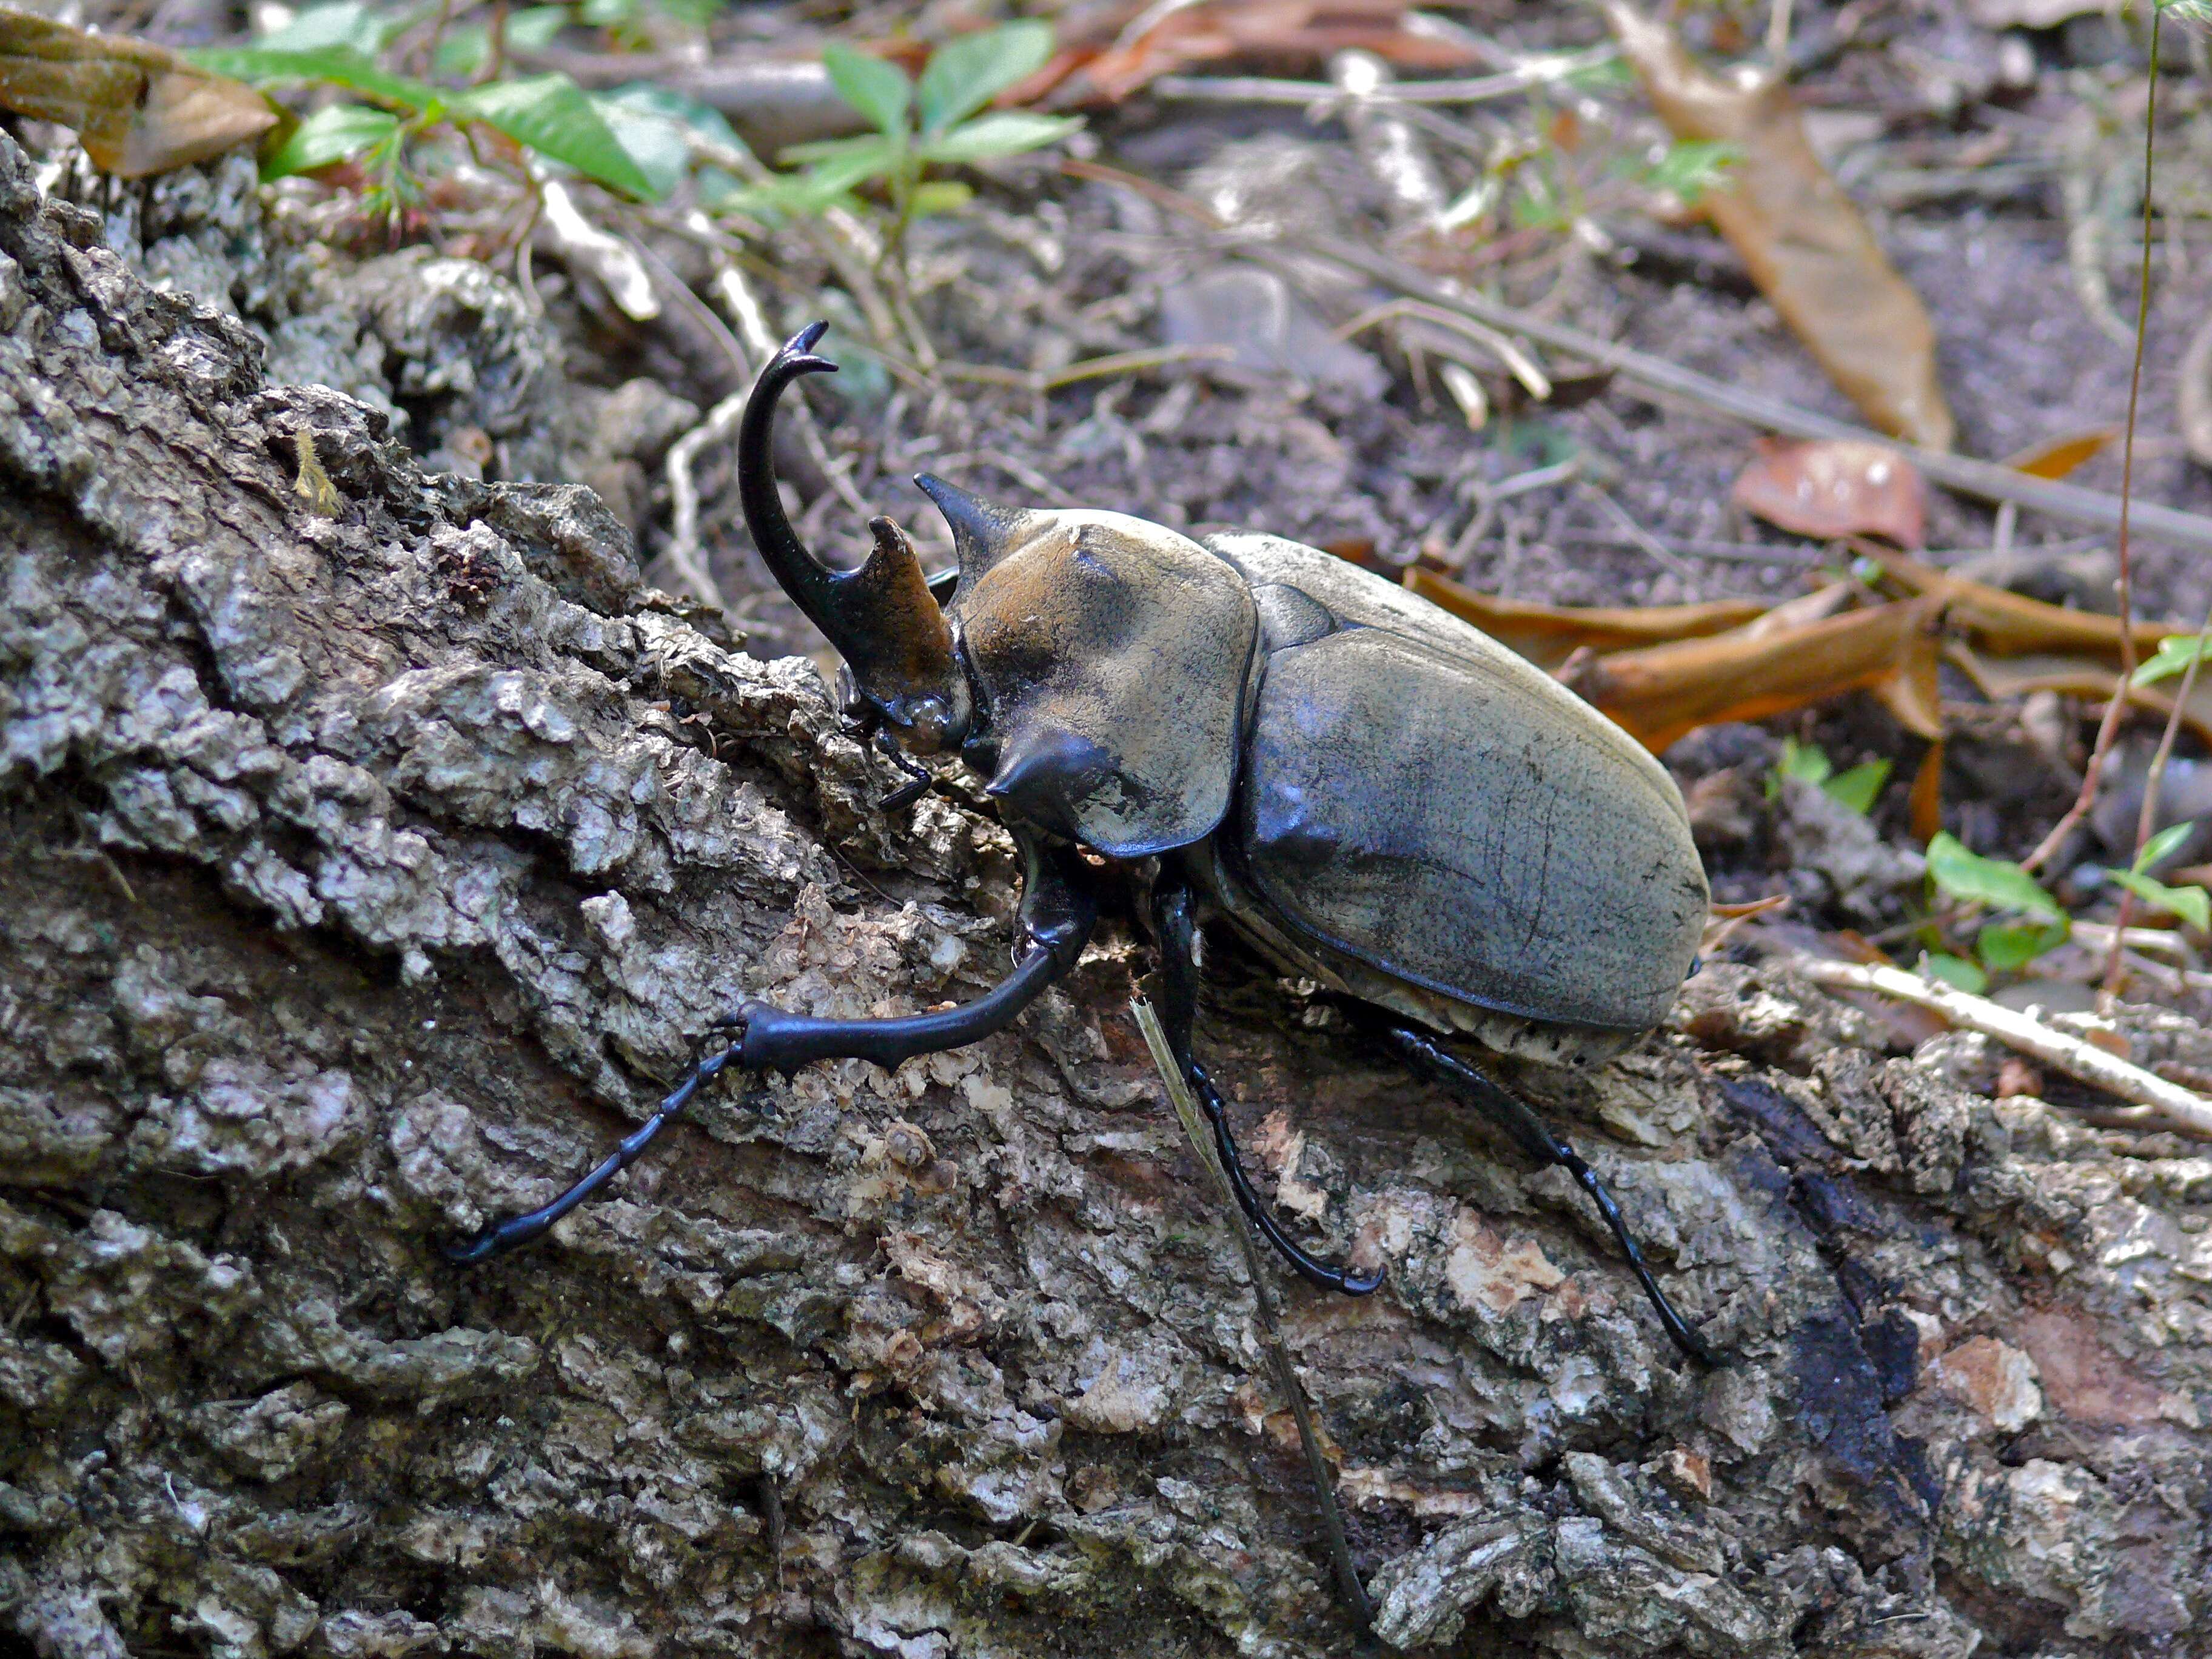 Image of Elephant Beetles